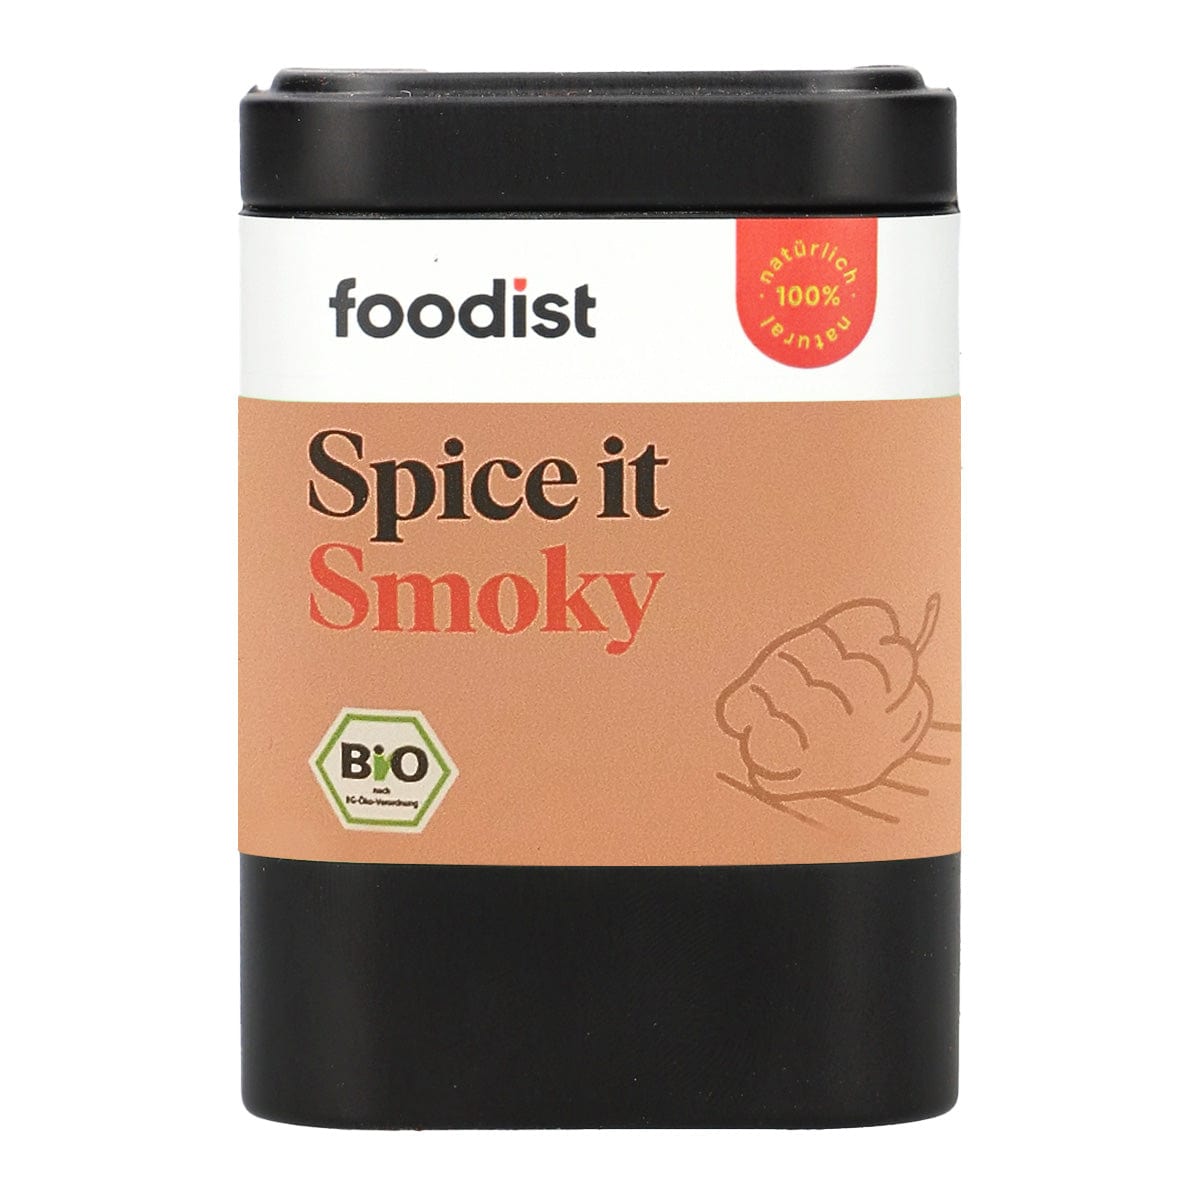 Bio Foodist Spice it Smoky Gewürzmischung, 100g